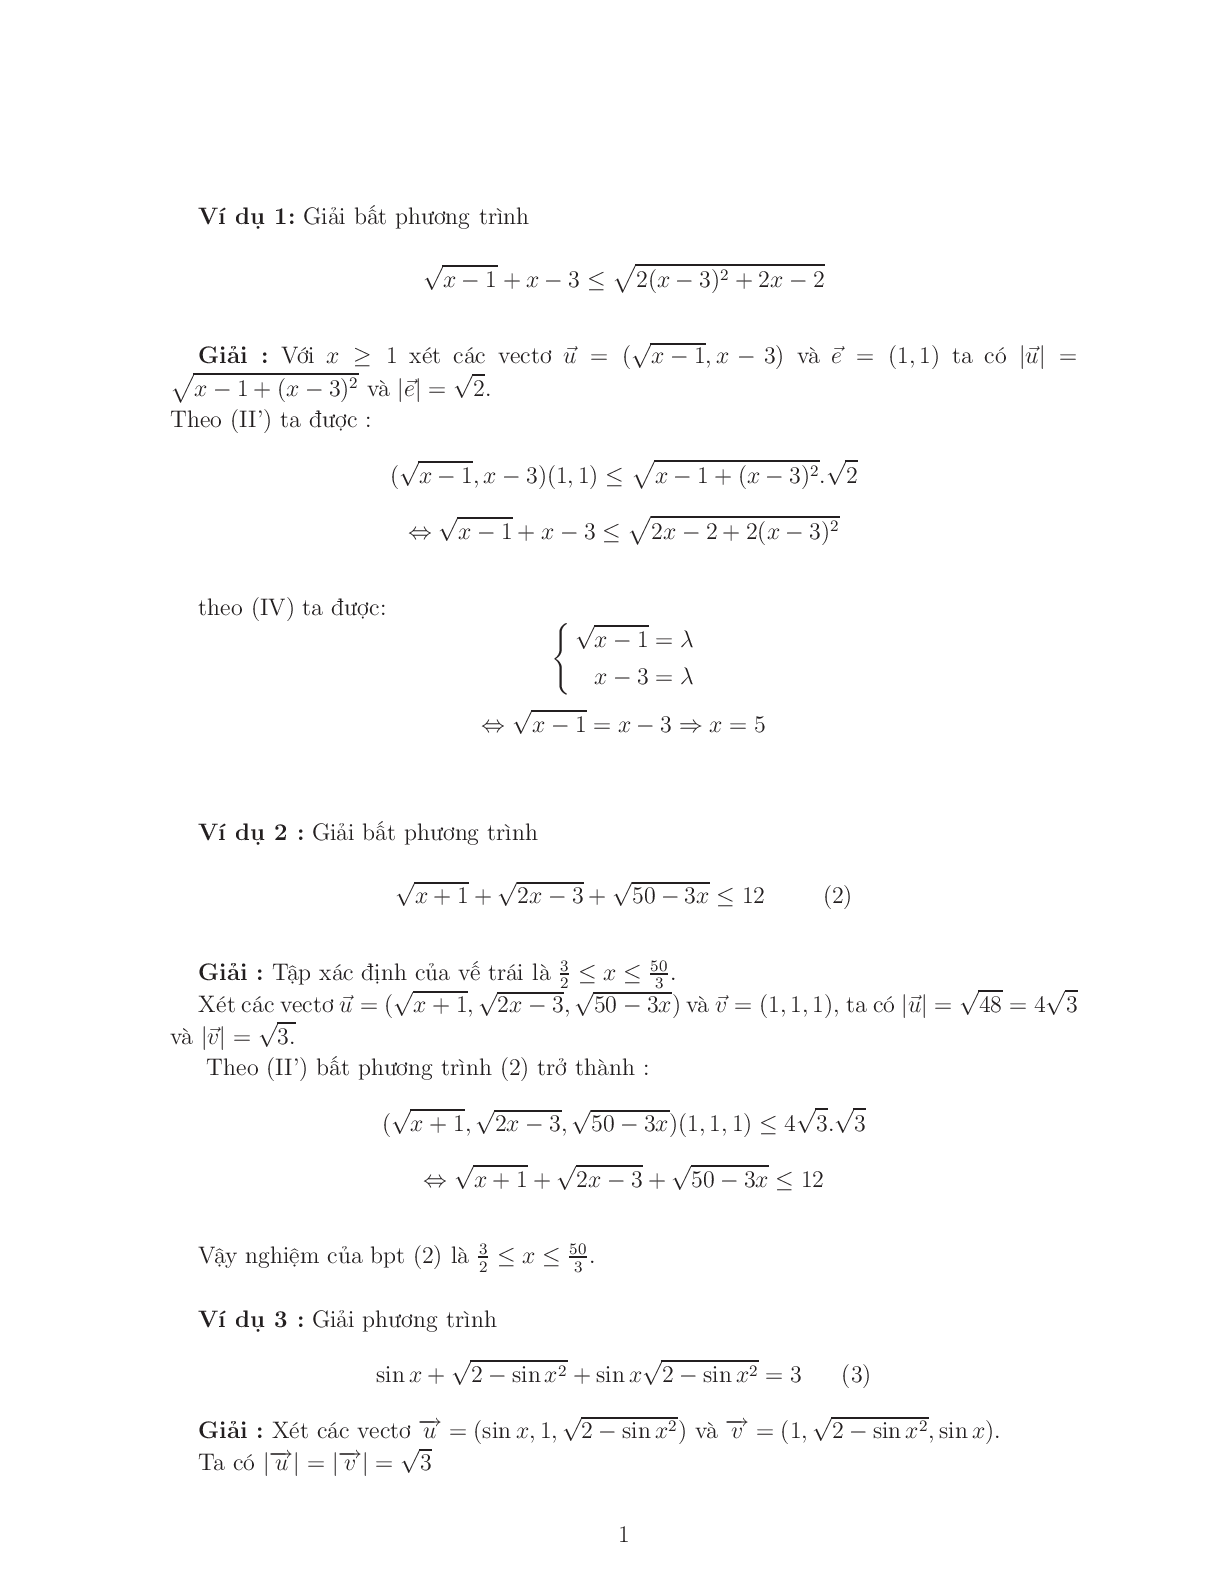 Giải phương trình – bất phương trình bằng phương pháp Vector (trang 1)